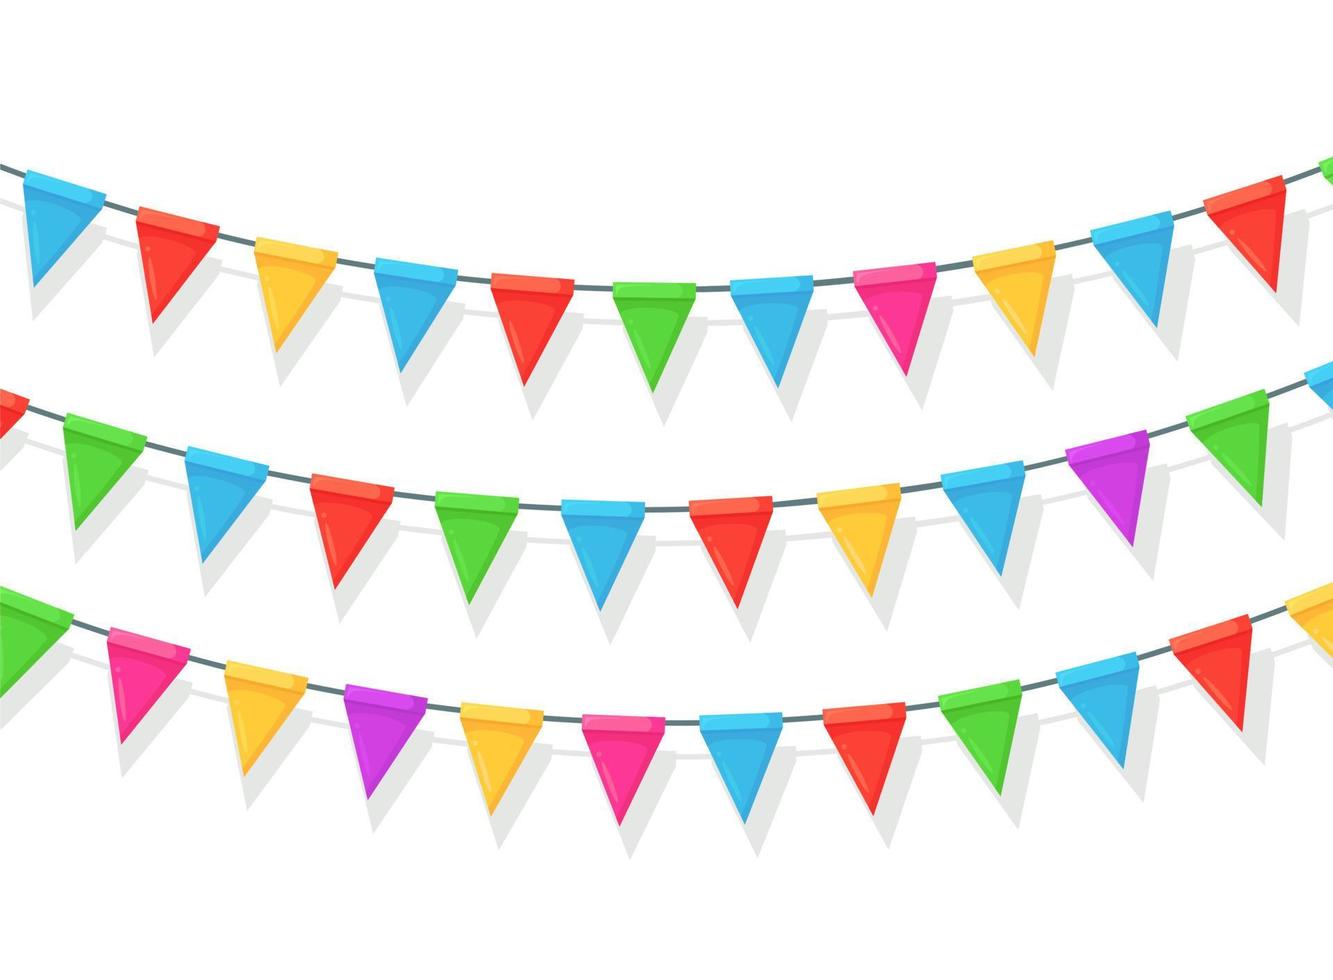 pancarta con guirnaldas de banderas y cintas del festival de colores, banderines aislados en fondo blanco. decoración, símbolos para celebrar la fiesta de cumpleaños feliz, carnaval, feria. diseño plano vectorial vector